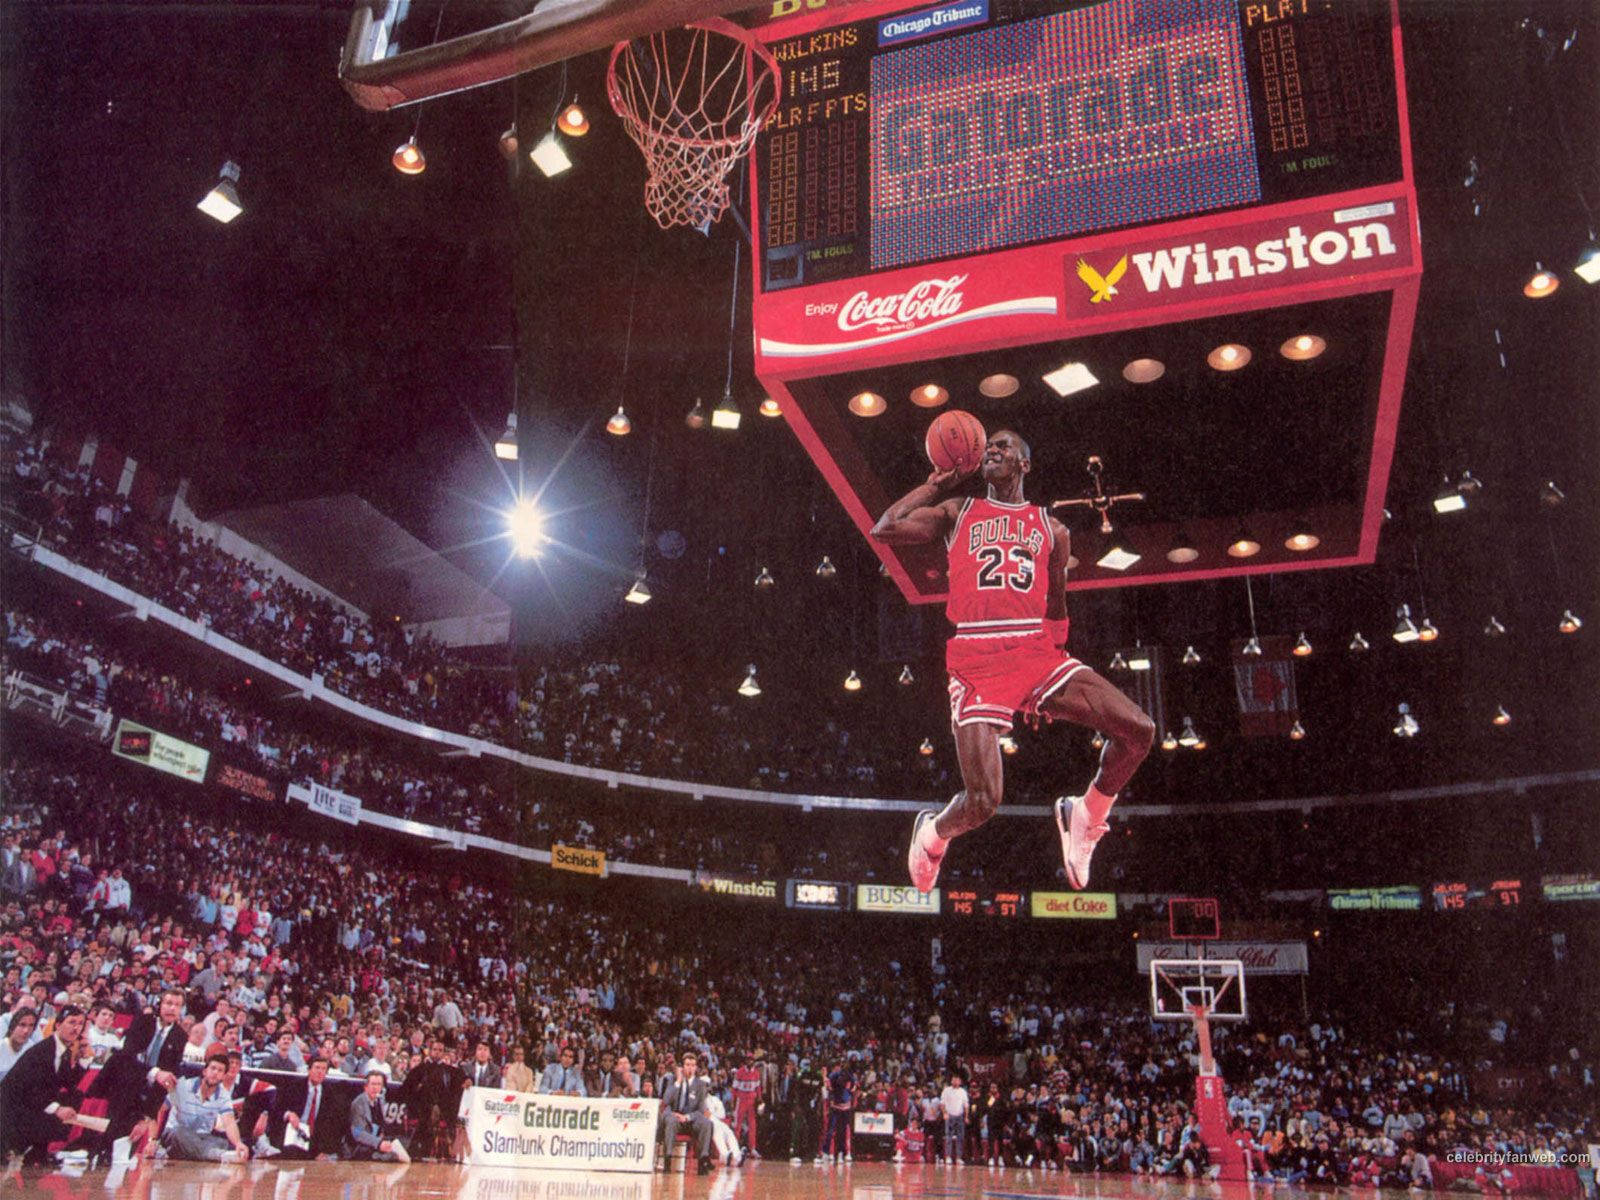 Muestratus Habilidades En La Cancha De Baloncesto Como Michael Jordan. Fondo de pantalla